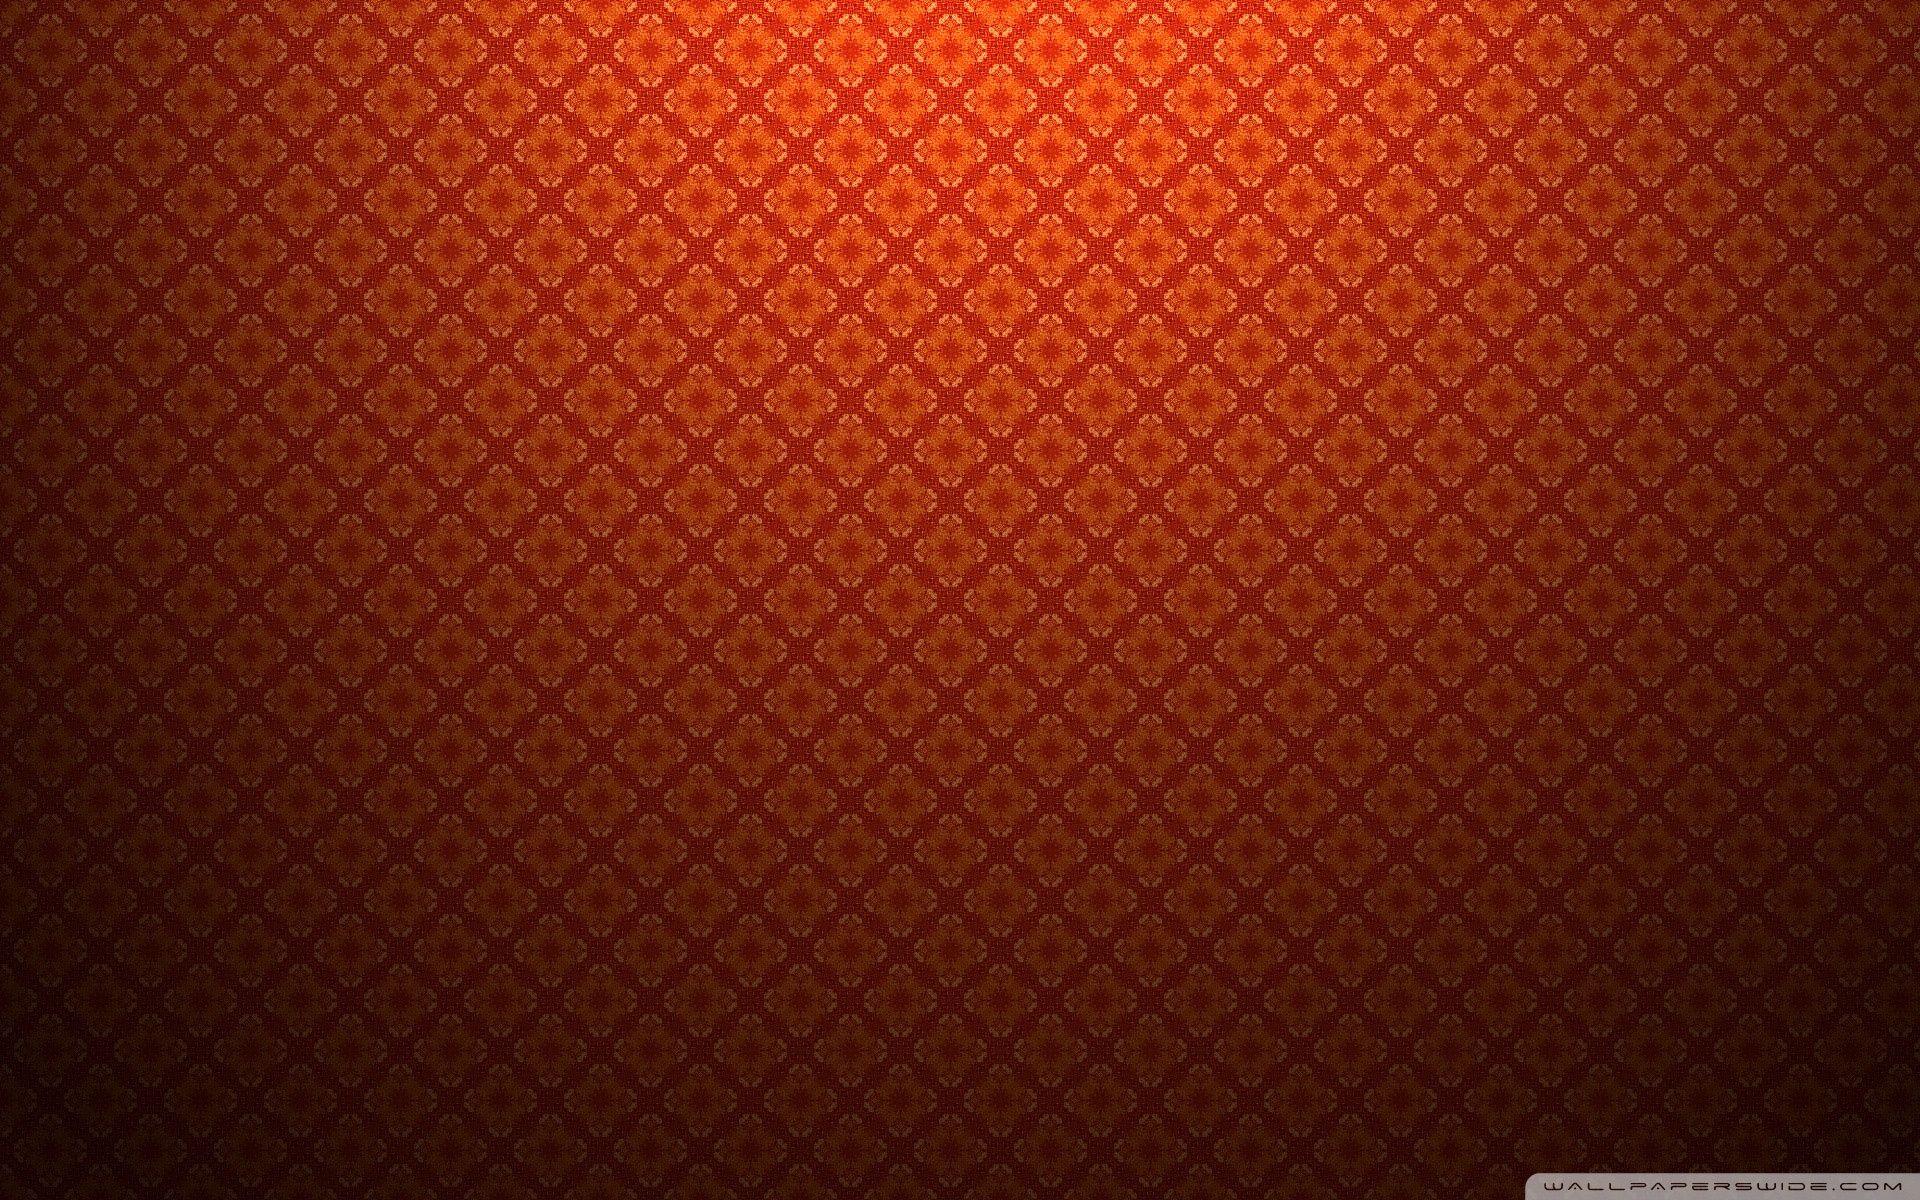 97+ wallpapers classic hd đầy màu sắc, vô vàn lựa chọn để tùy chỉnh cho chiếc điện thoại của bạn. Đừng bỏ lỡ việc xem các hình ảnh liên quan tới từ khóa này.